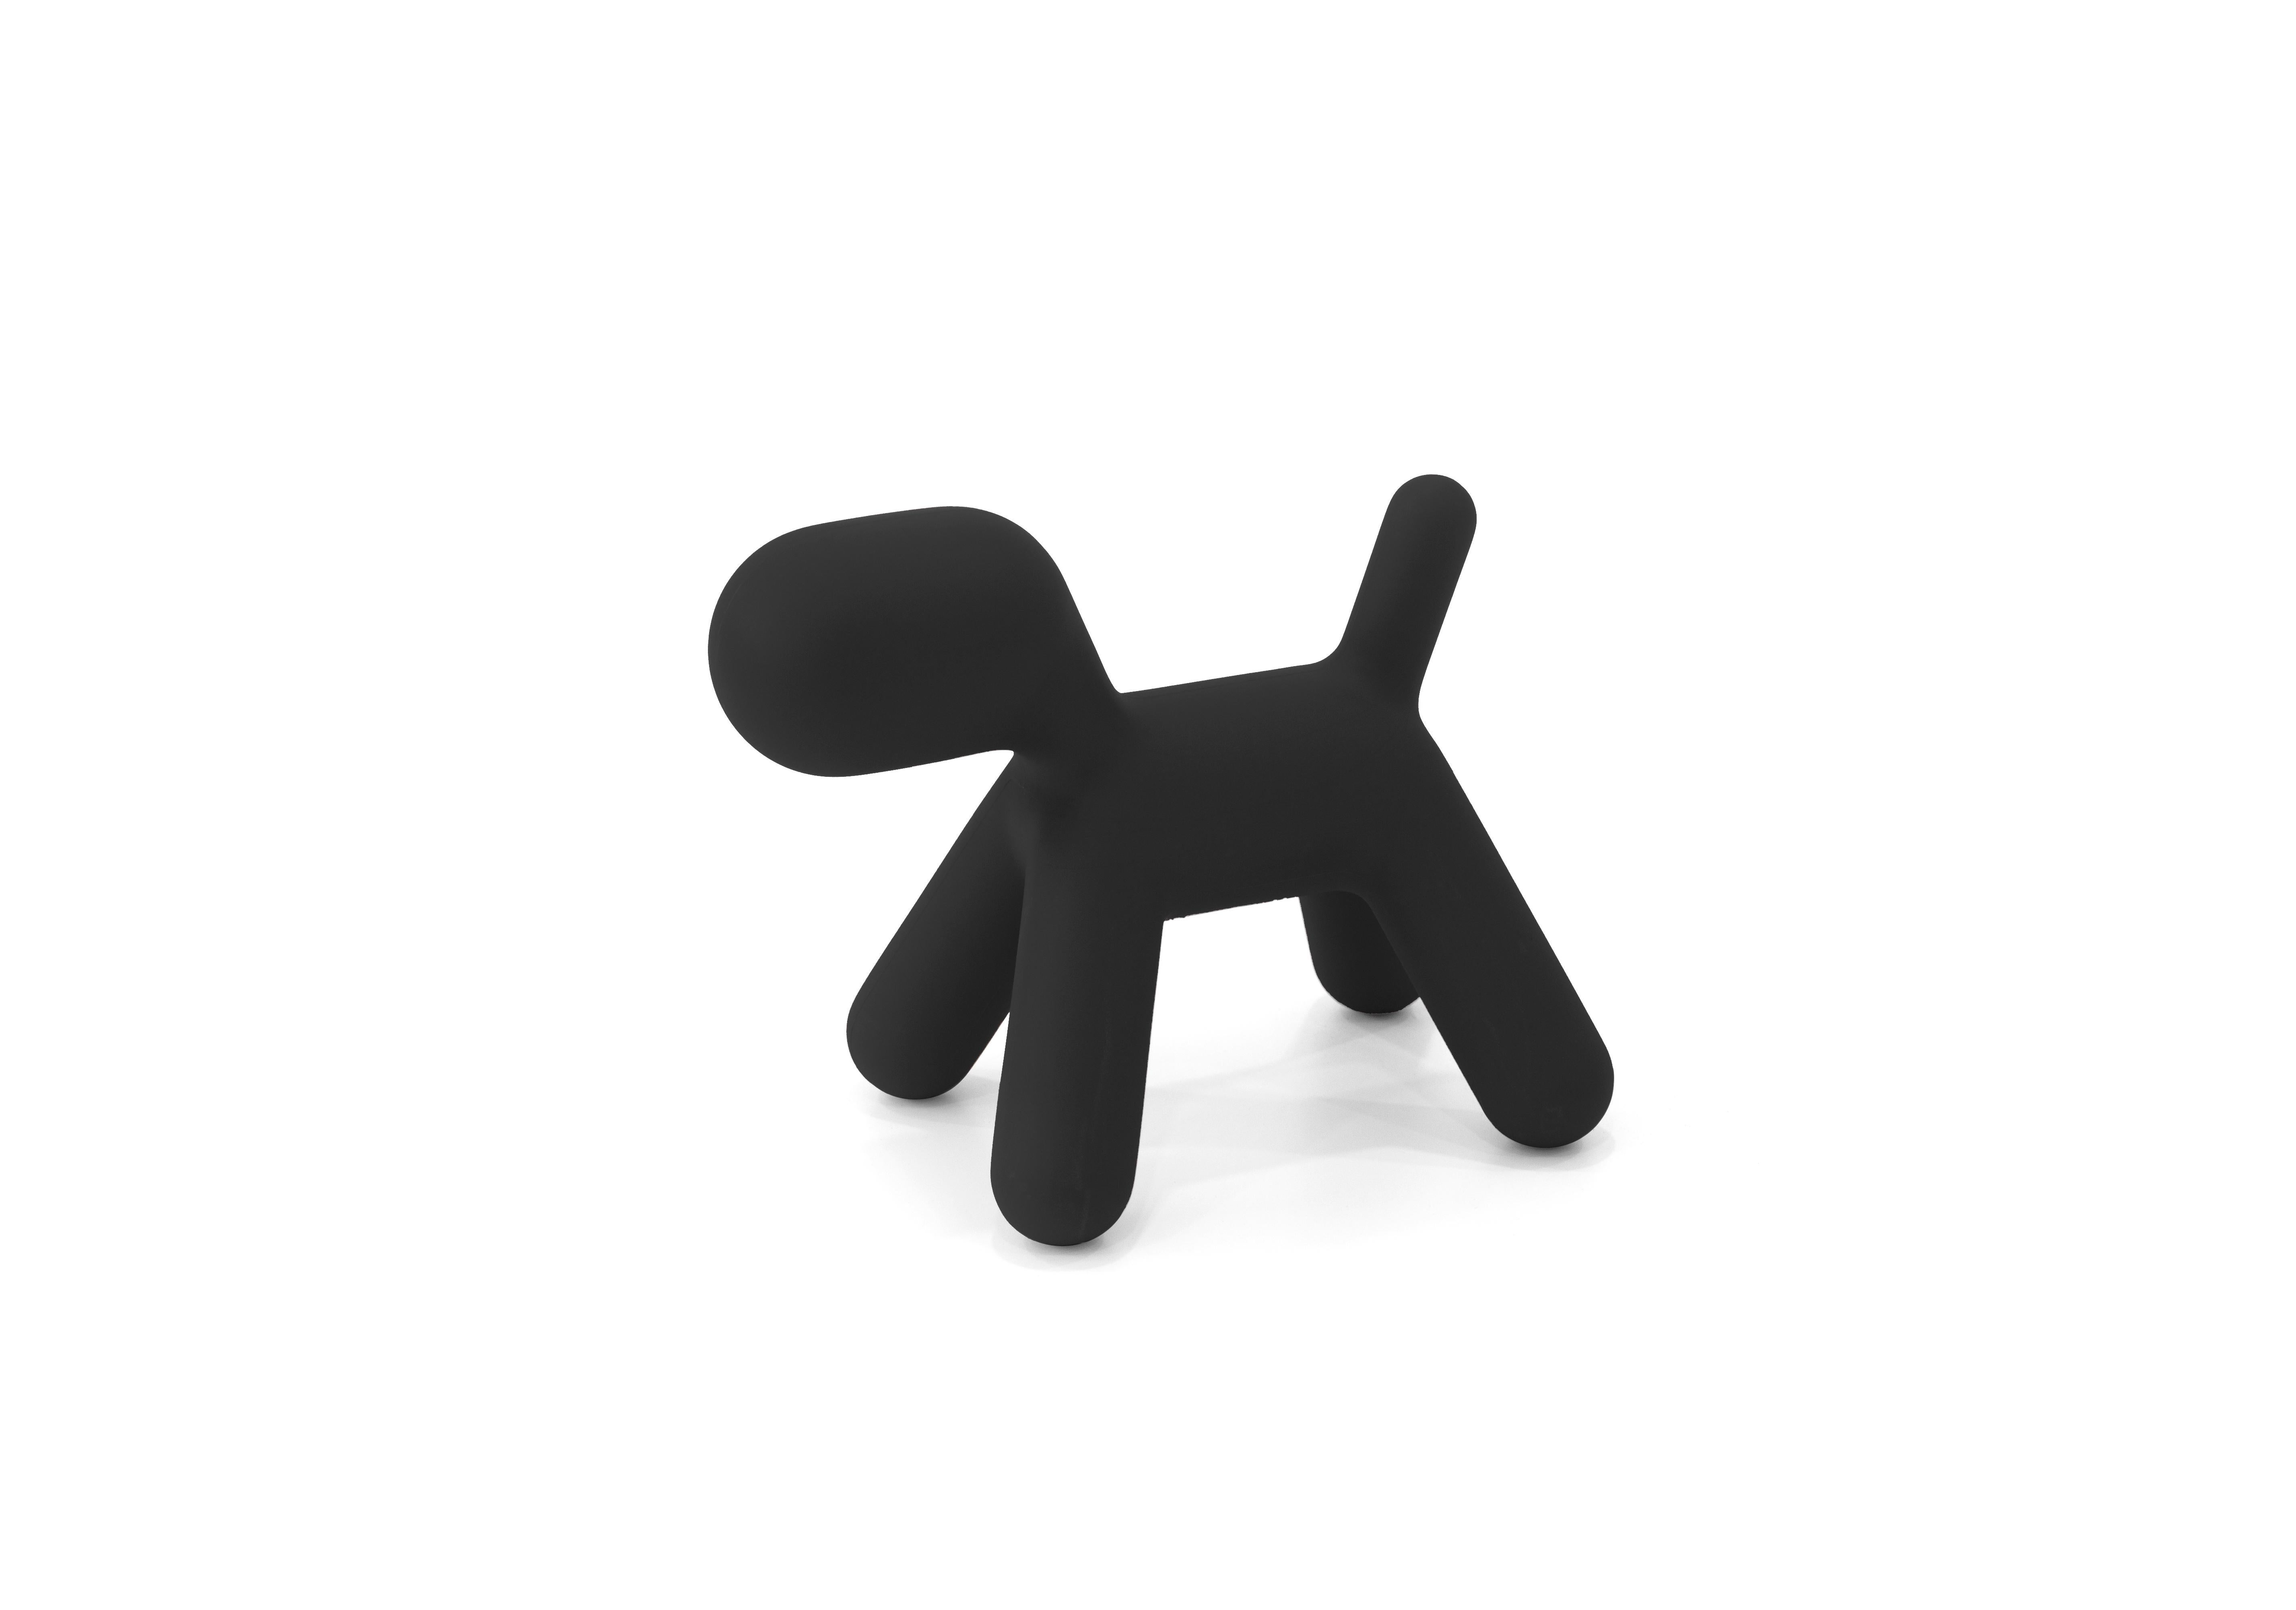 Créé par Eero Aarnio, maître de la culture du design scandinave et innovateur sur la scène internationale depuis les années soixante, Puppy est un petit chien tel que l'a imaginé le grand designer, dont l'objectif était de voir à travers les yeux